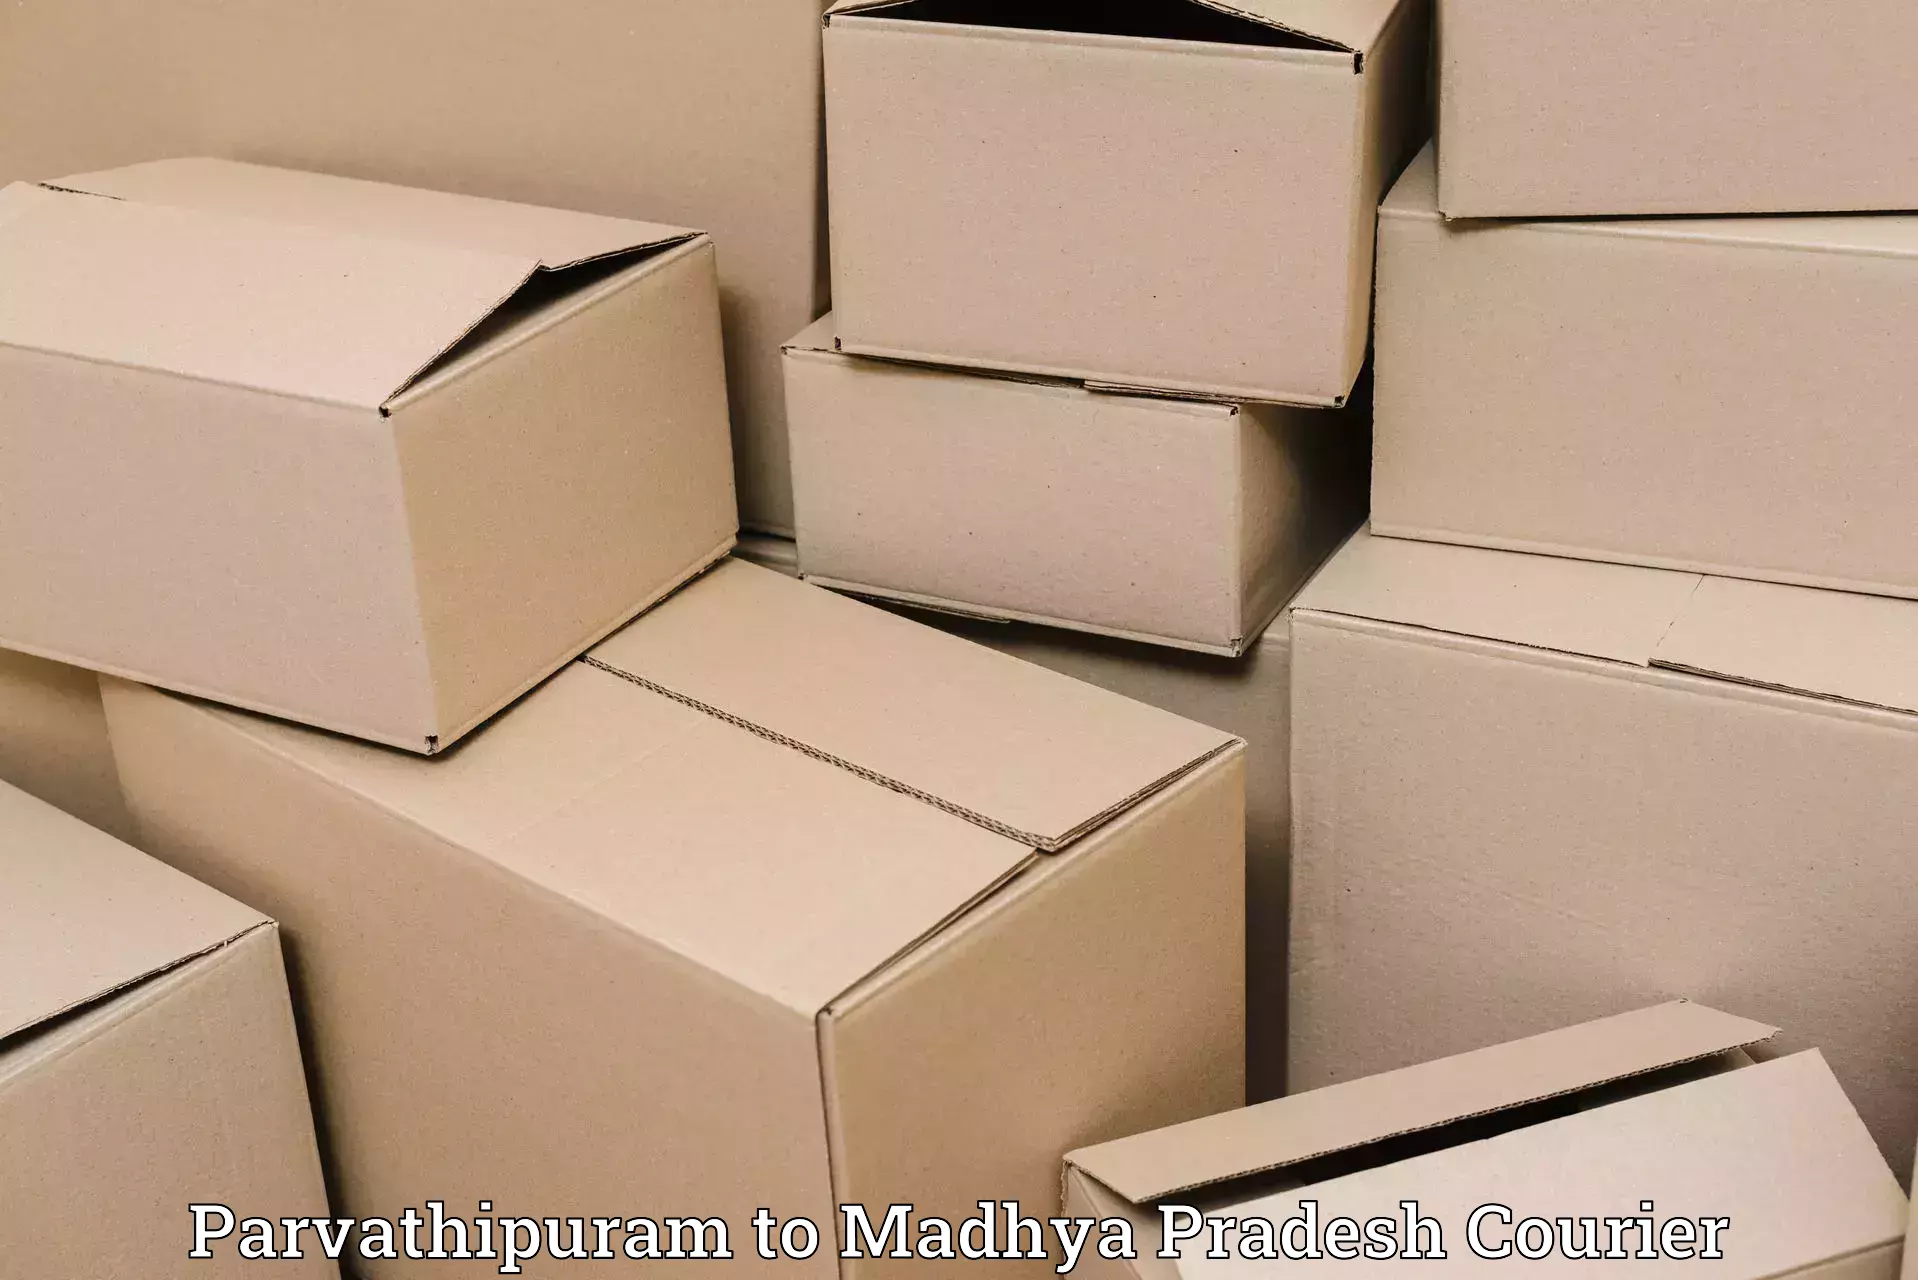 Customer-focused courier Parvathipuram to Narsinghpur